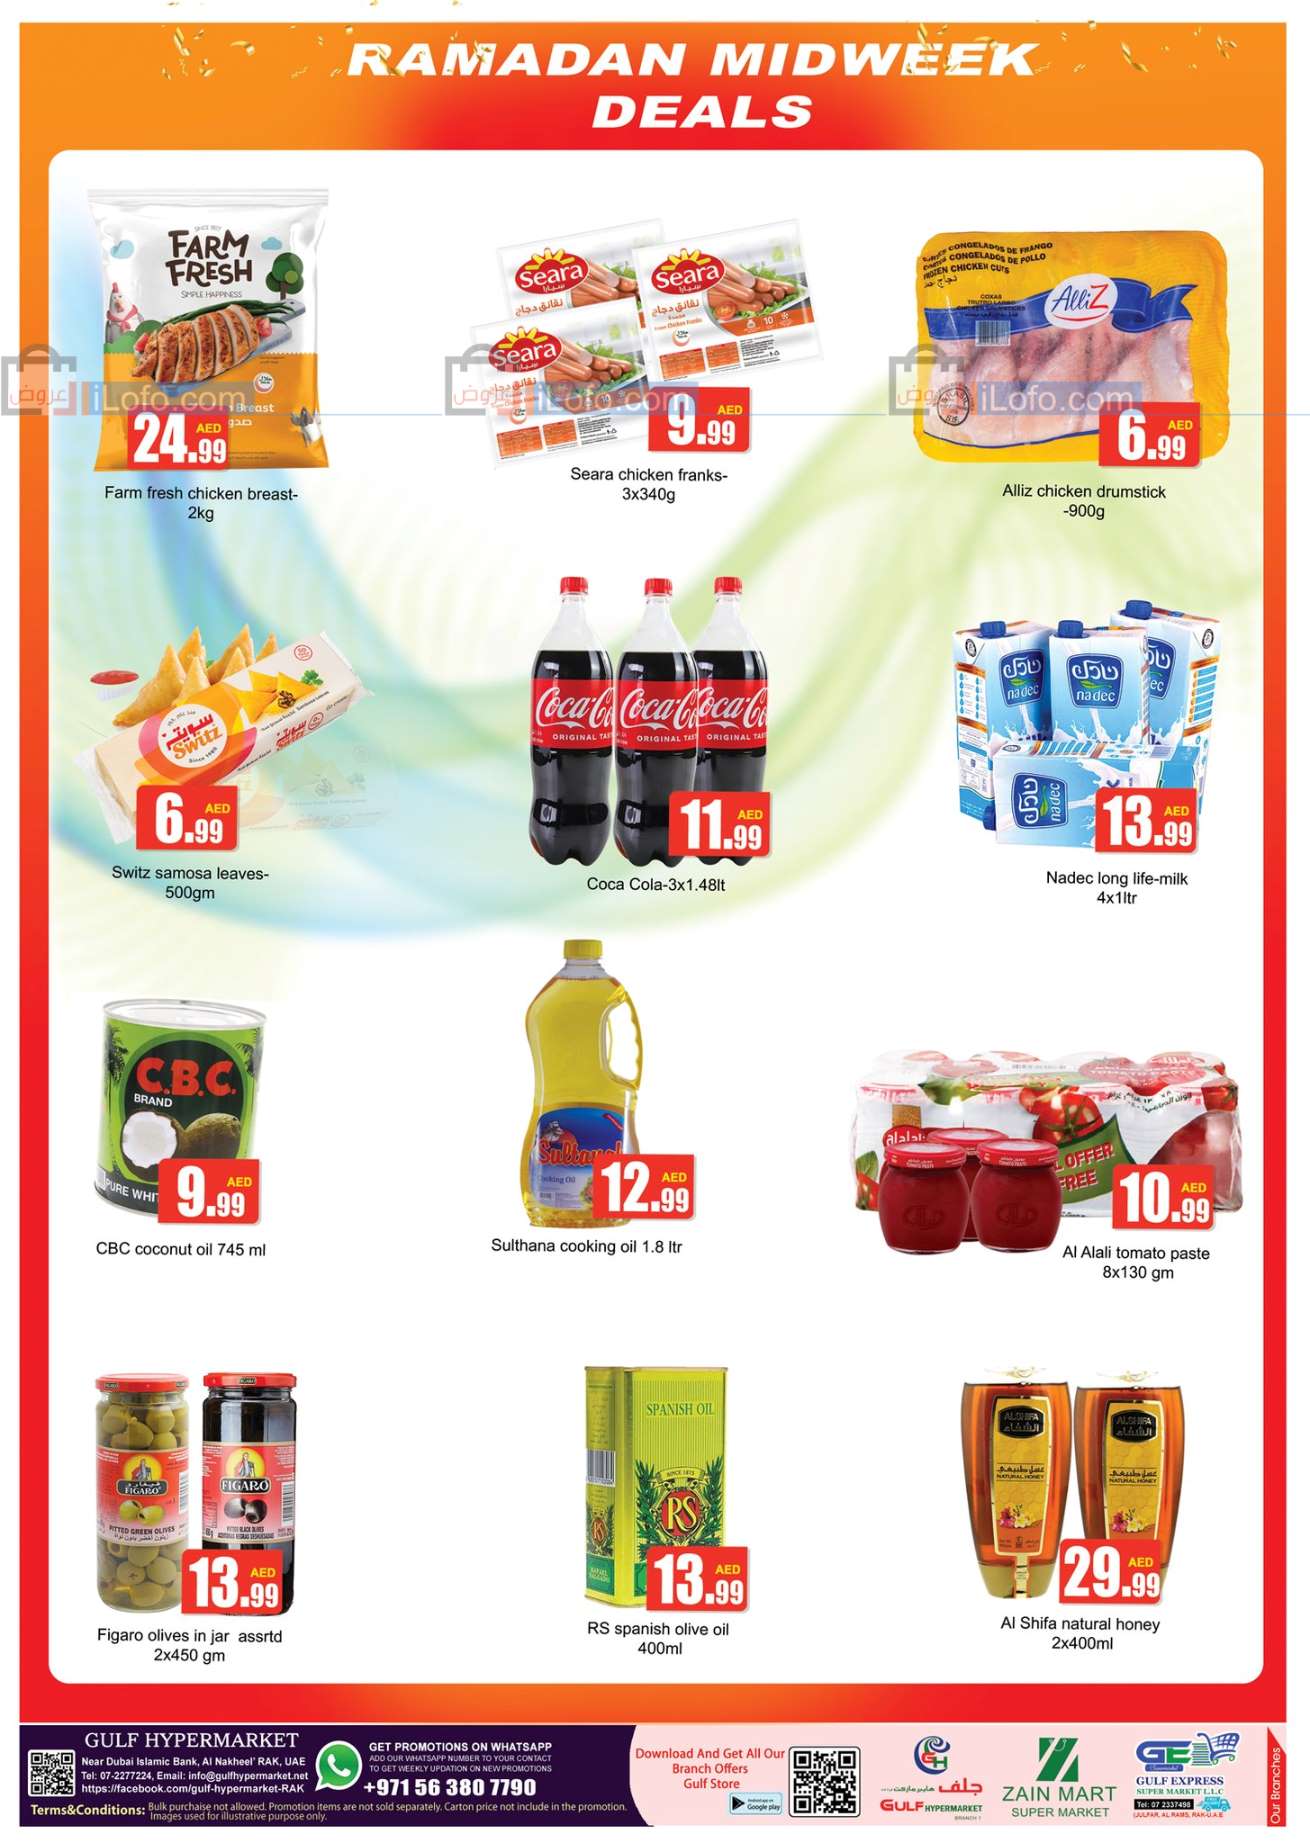 Page 2 at Midweek Deals at Gulf hypermarket RAK UAE